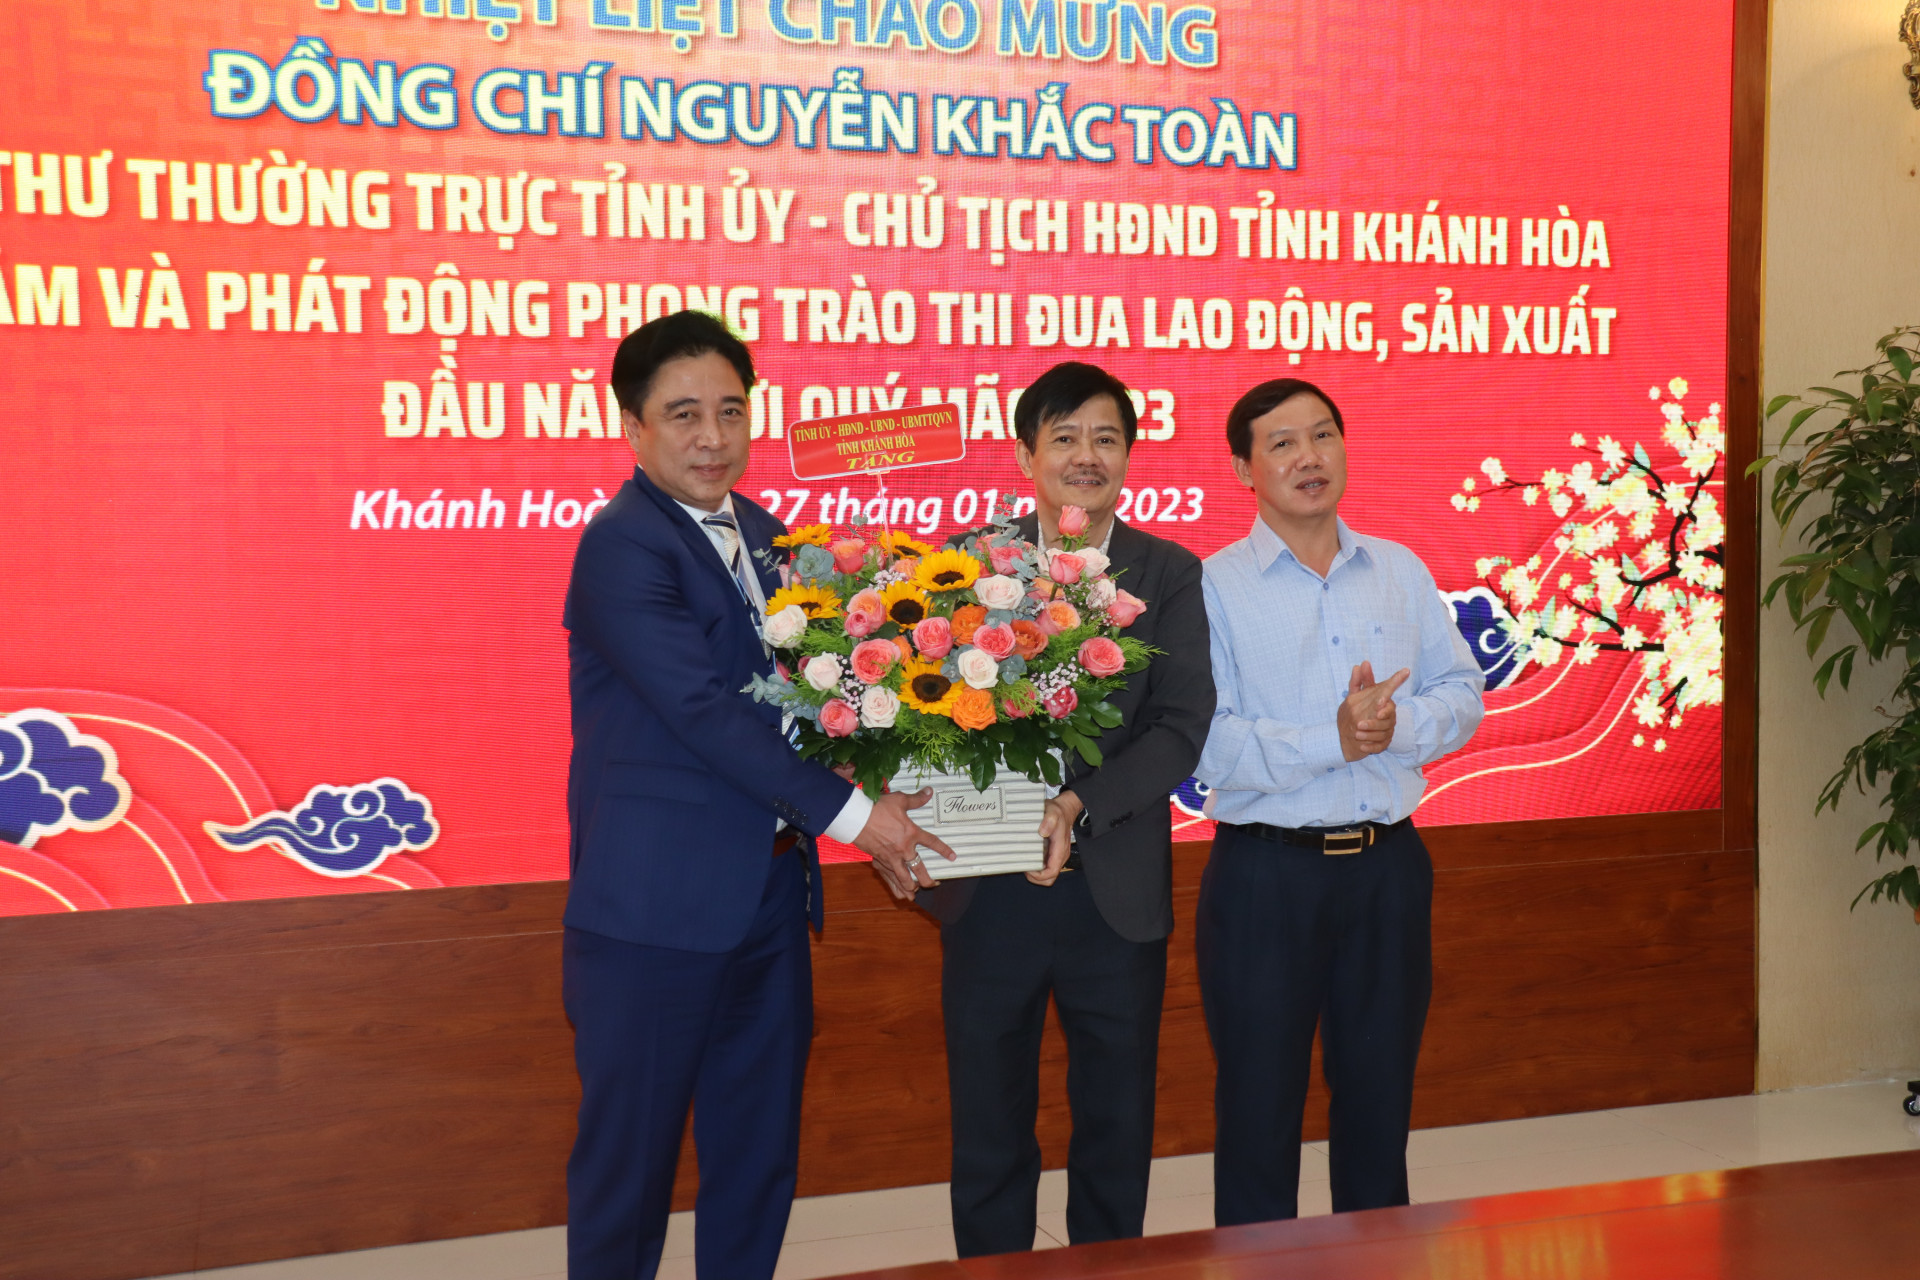 Đồng chí Nguyễn Khắc Toàn tặng hoa chúc mừng Khatoco